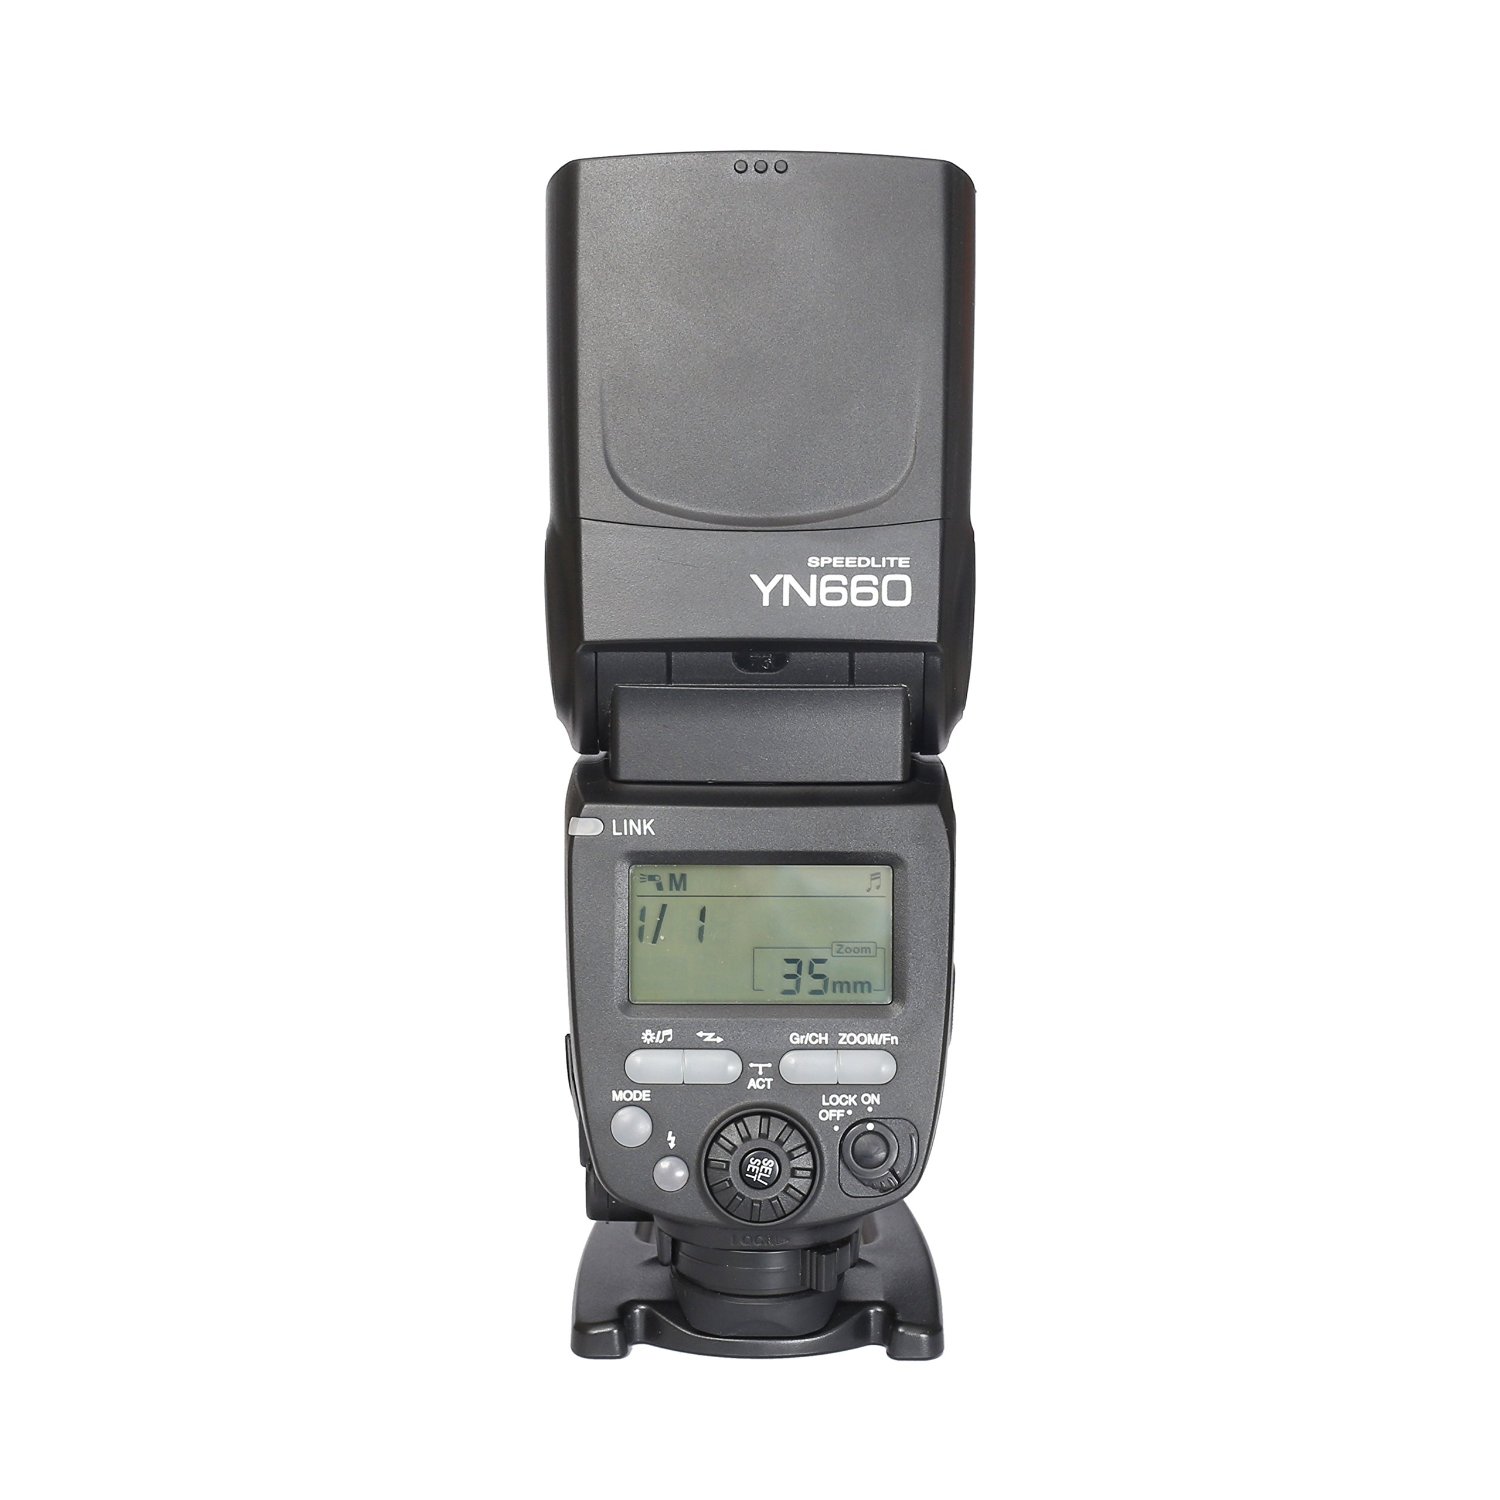 Yongnuo-YN660-Wireless-GN66-24G-Flash-Speedlite-for-Canon-Nikon-Pentax-Cameras-1233170